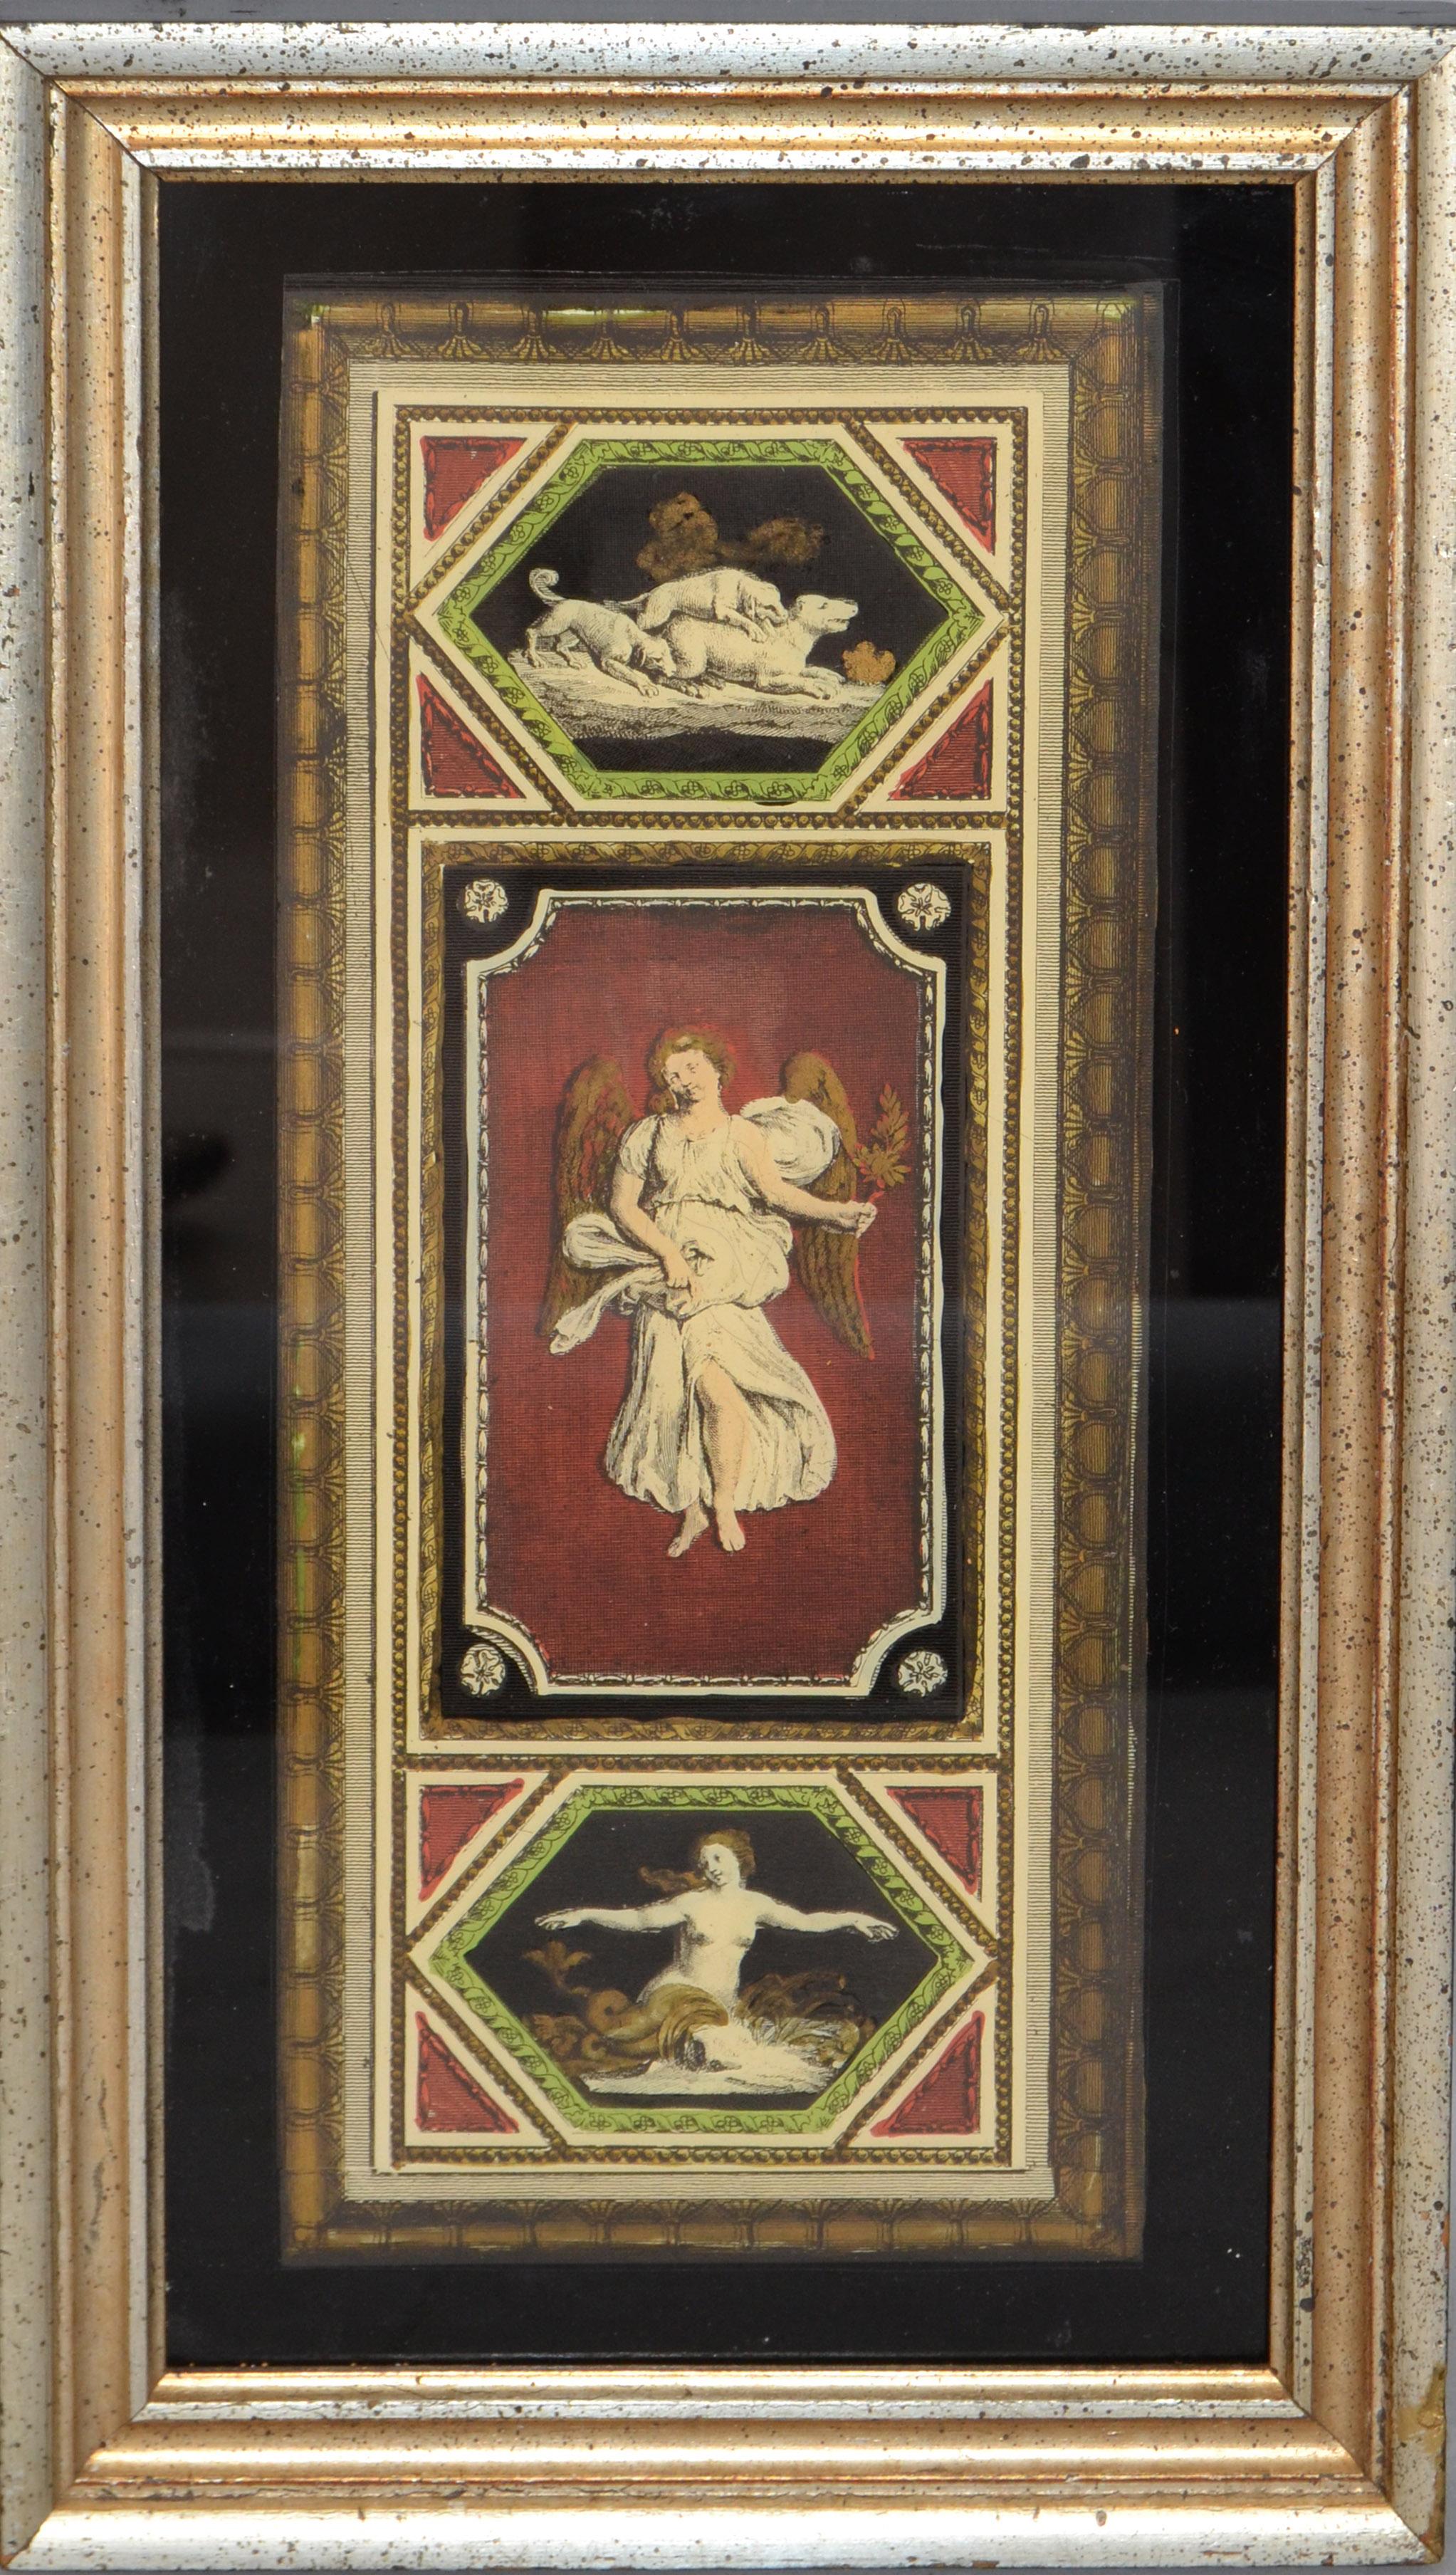 Hand gerahmt und eingeschlossen Florentine Fine Art Darstellung von 3 Hunden, Engel und eine nackte Frau. 
Die Rückwand ermöglicht eine sichere Aufhängung.
Kunst Größe misst: 5 x 12 Zoll.